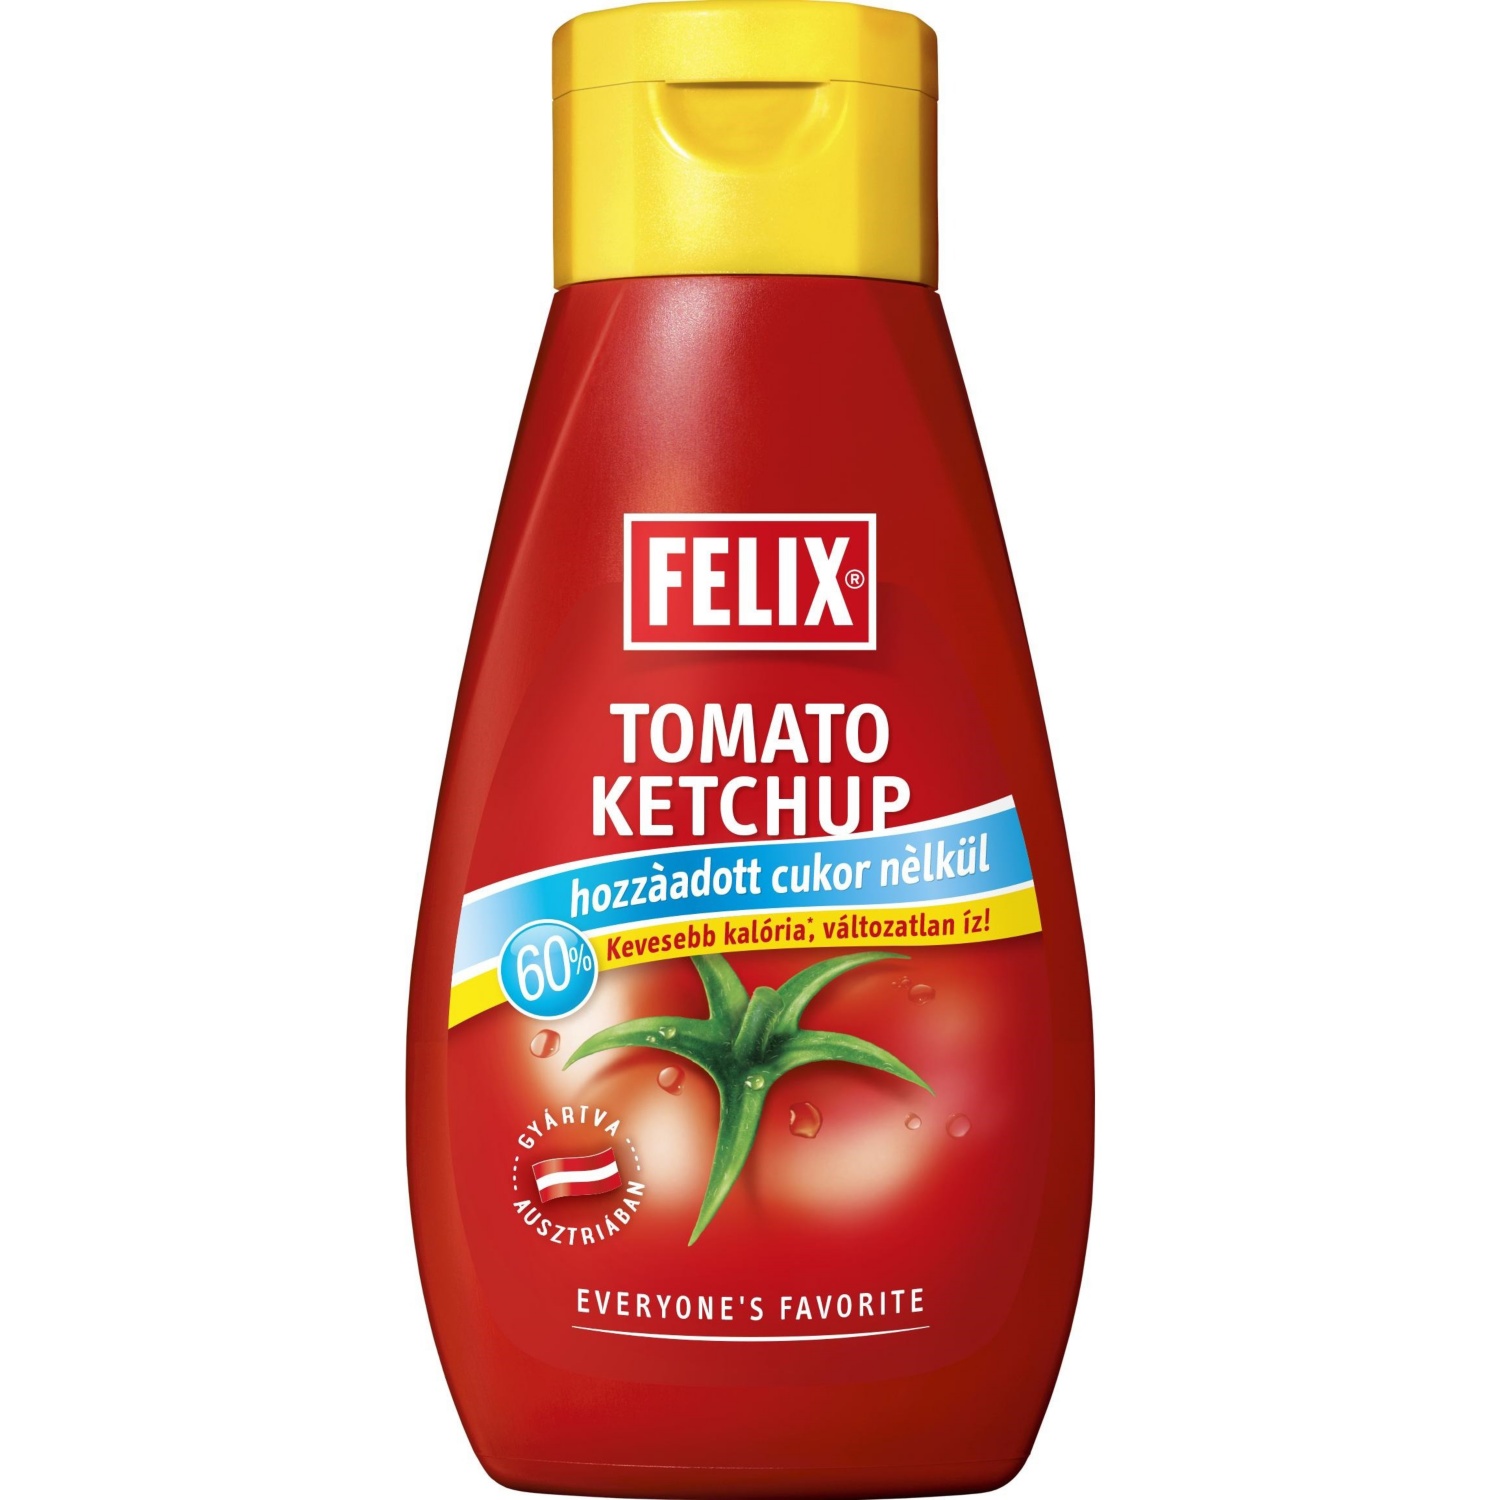 FELIX ketchup hozzáadott cukor nélkül, 435g